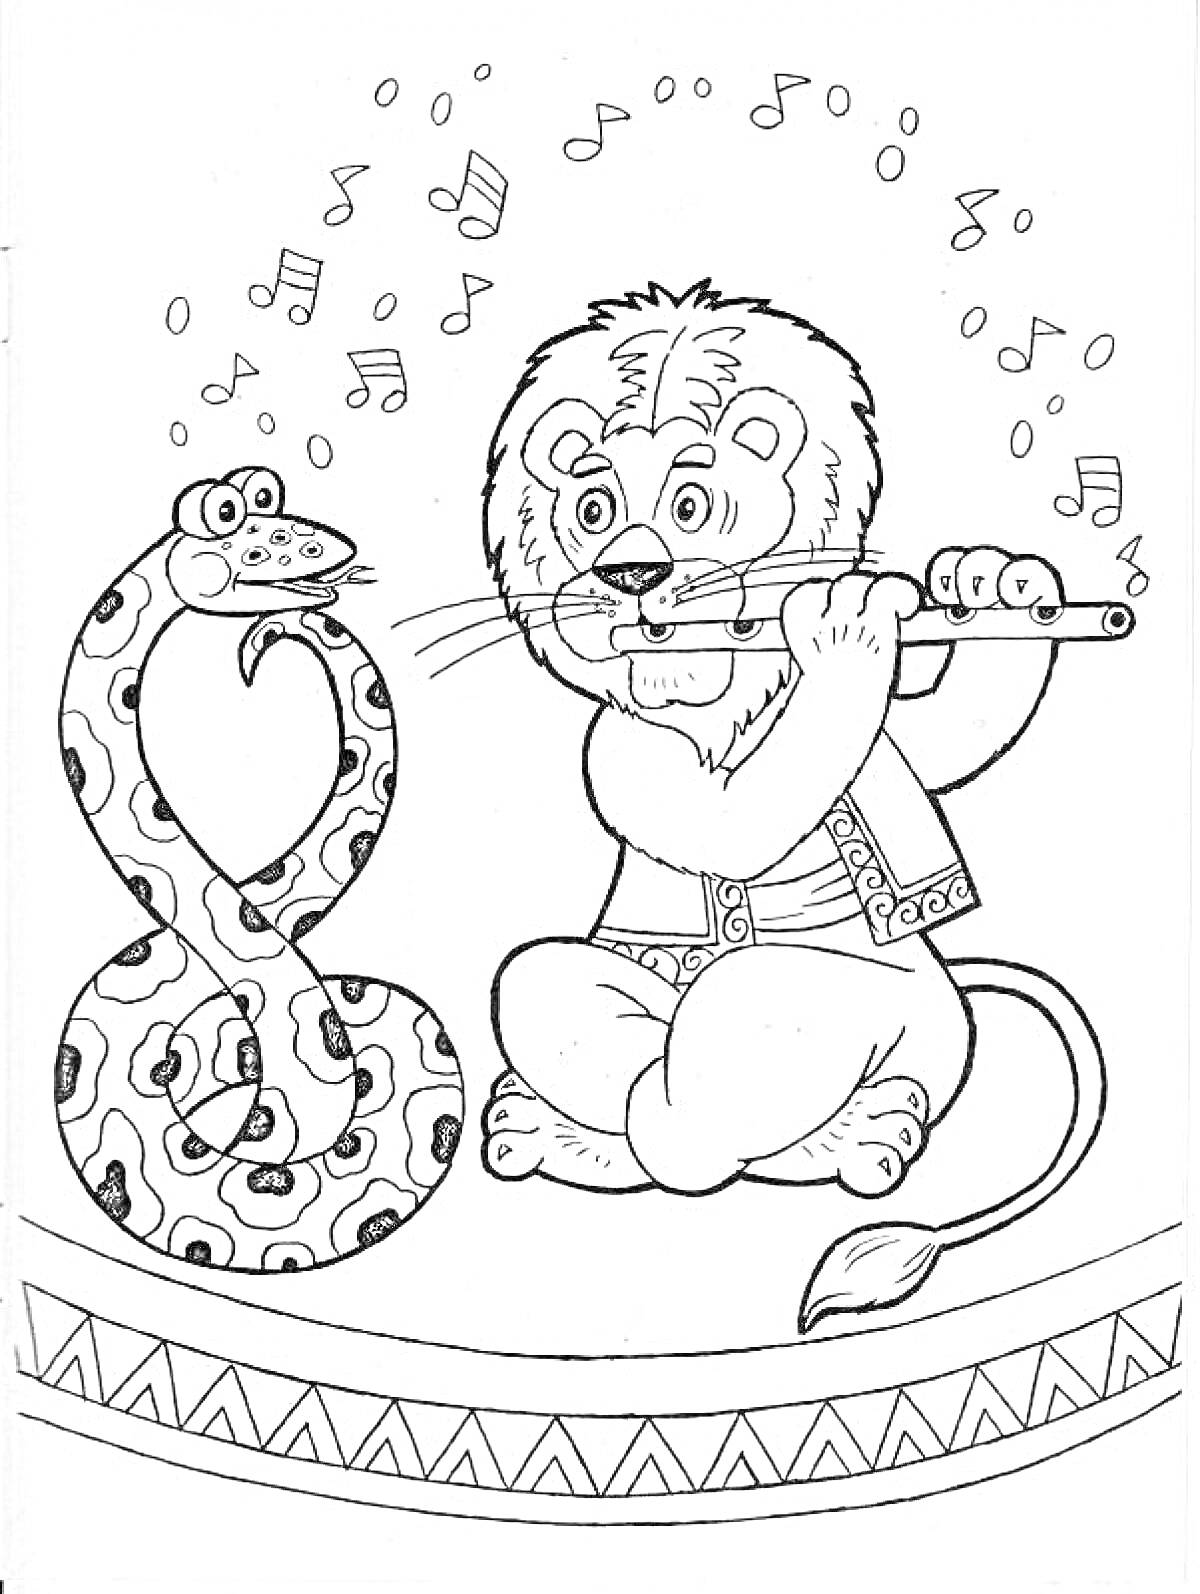 Лев с флейтой и танцующая змея на цирковой арене с нотами вокруг